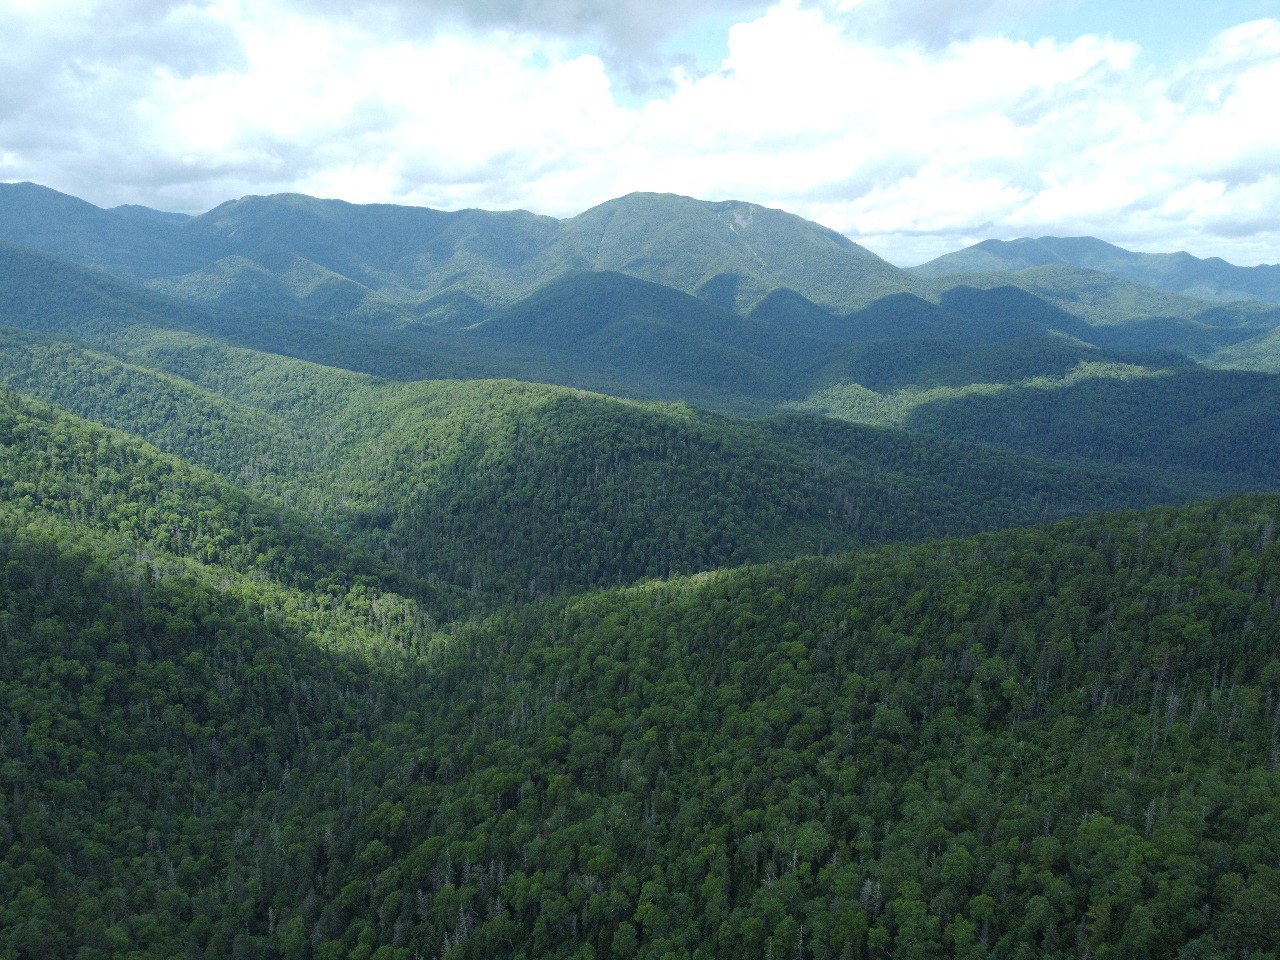 Ученые разработают методику прогнозирования усыхания елово-пихтовых лесов для юга Дальнего Востока - фото 1